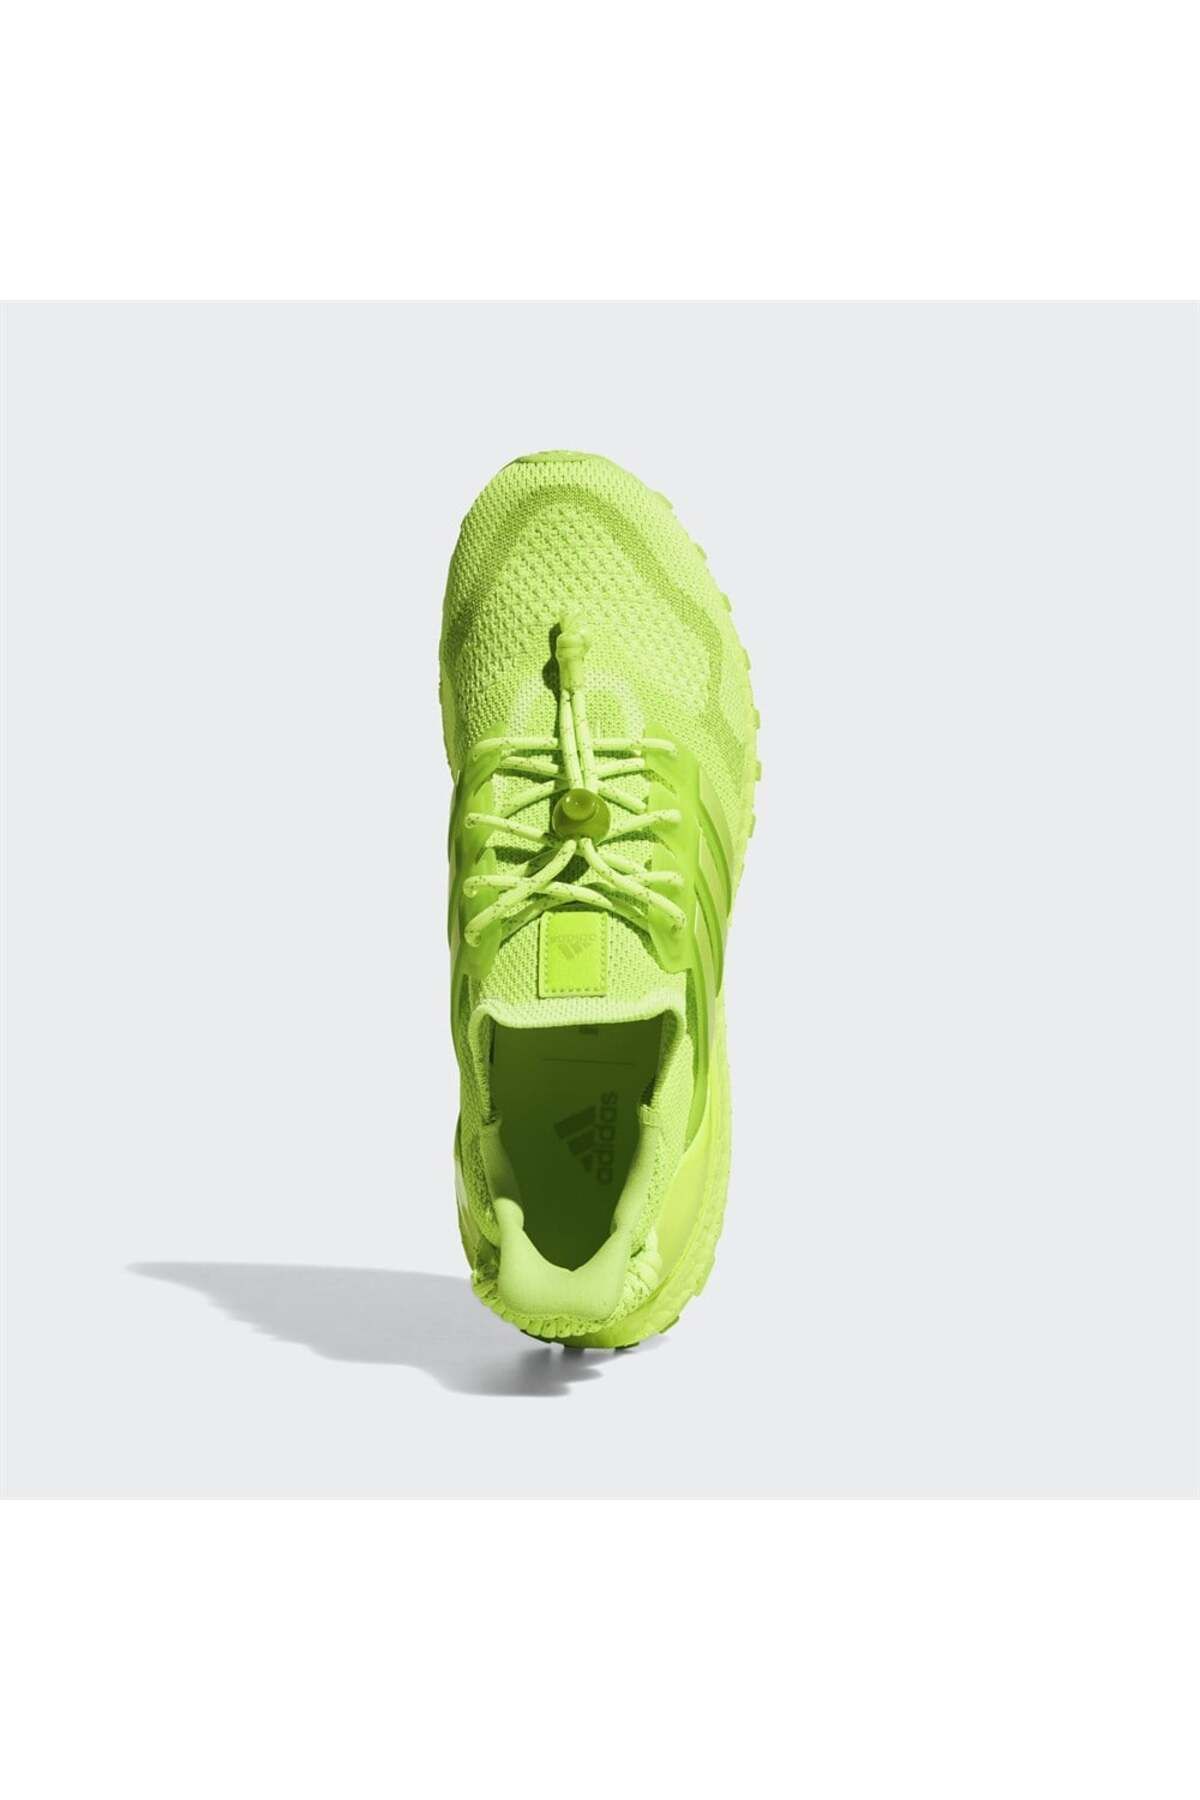 کفش کتانی دویدن و پیاده روی مردانه مدل IVP Ultraboost OG آدیداس Adidas